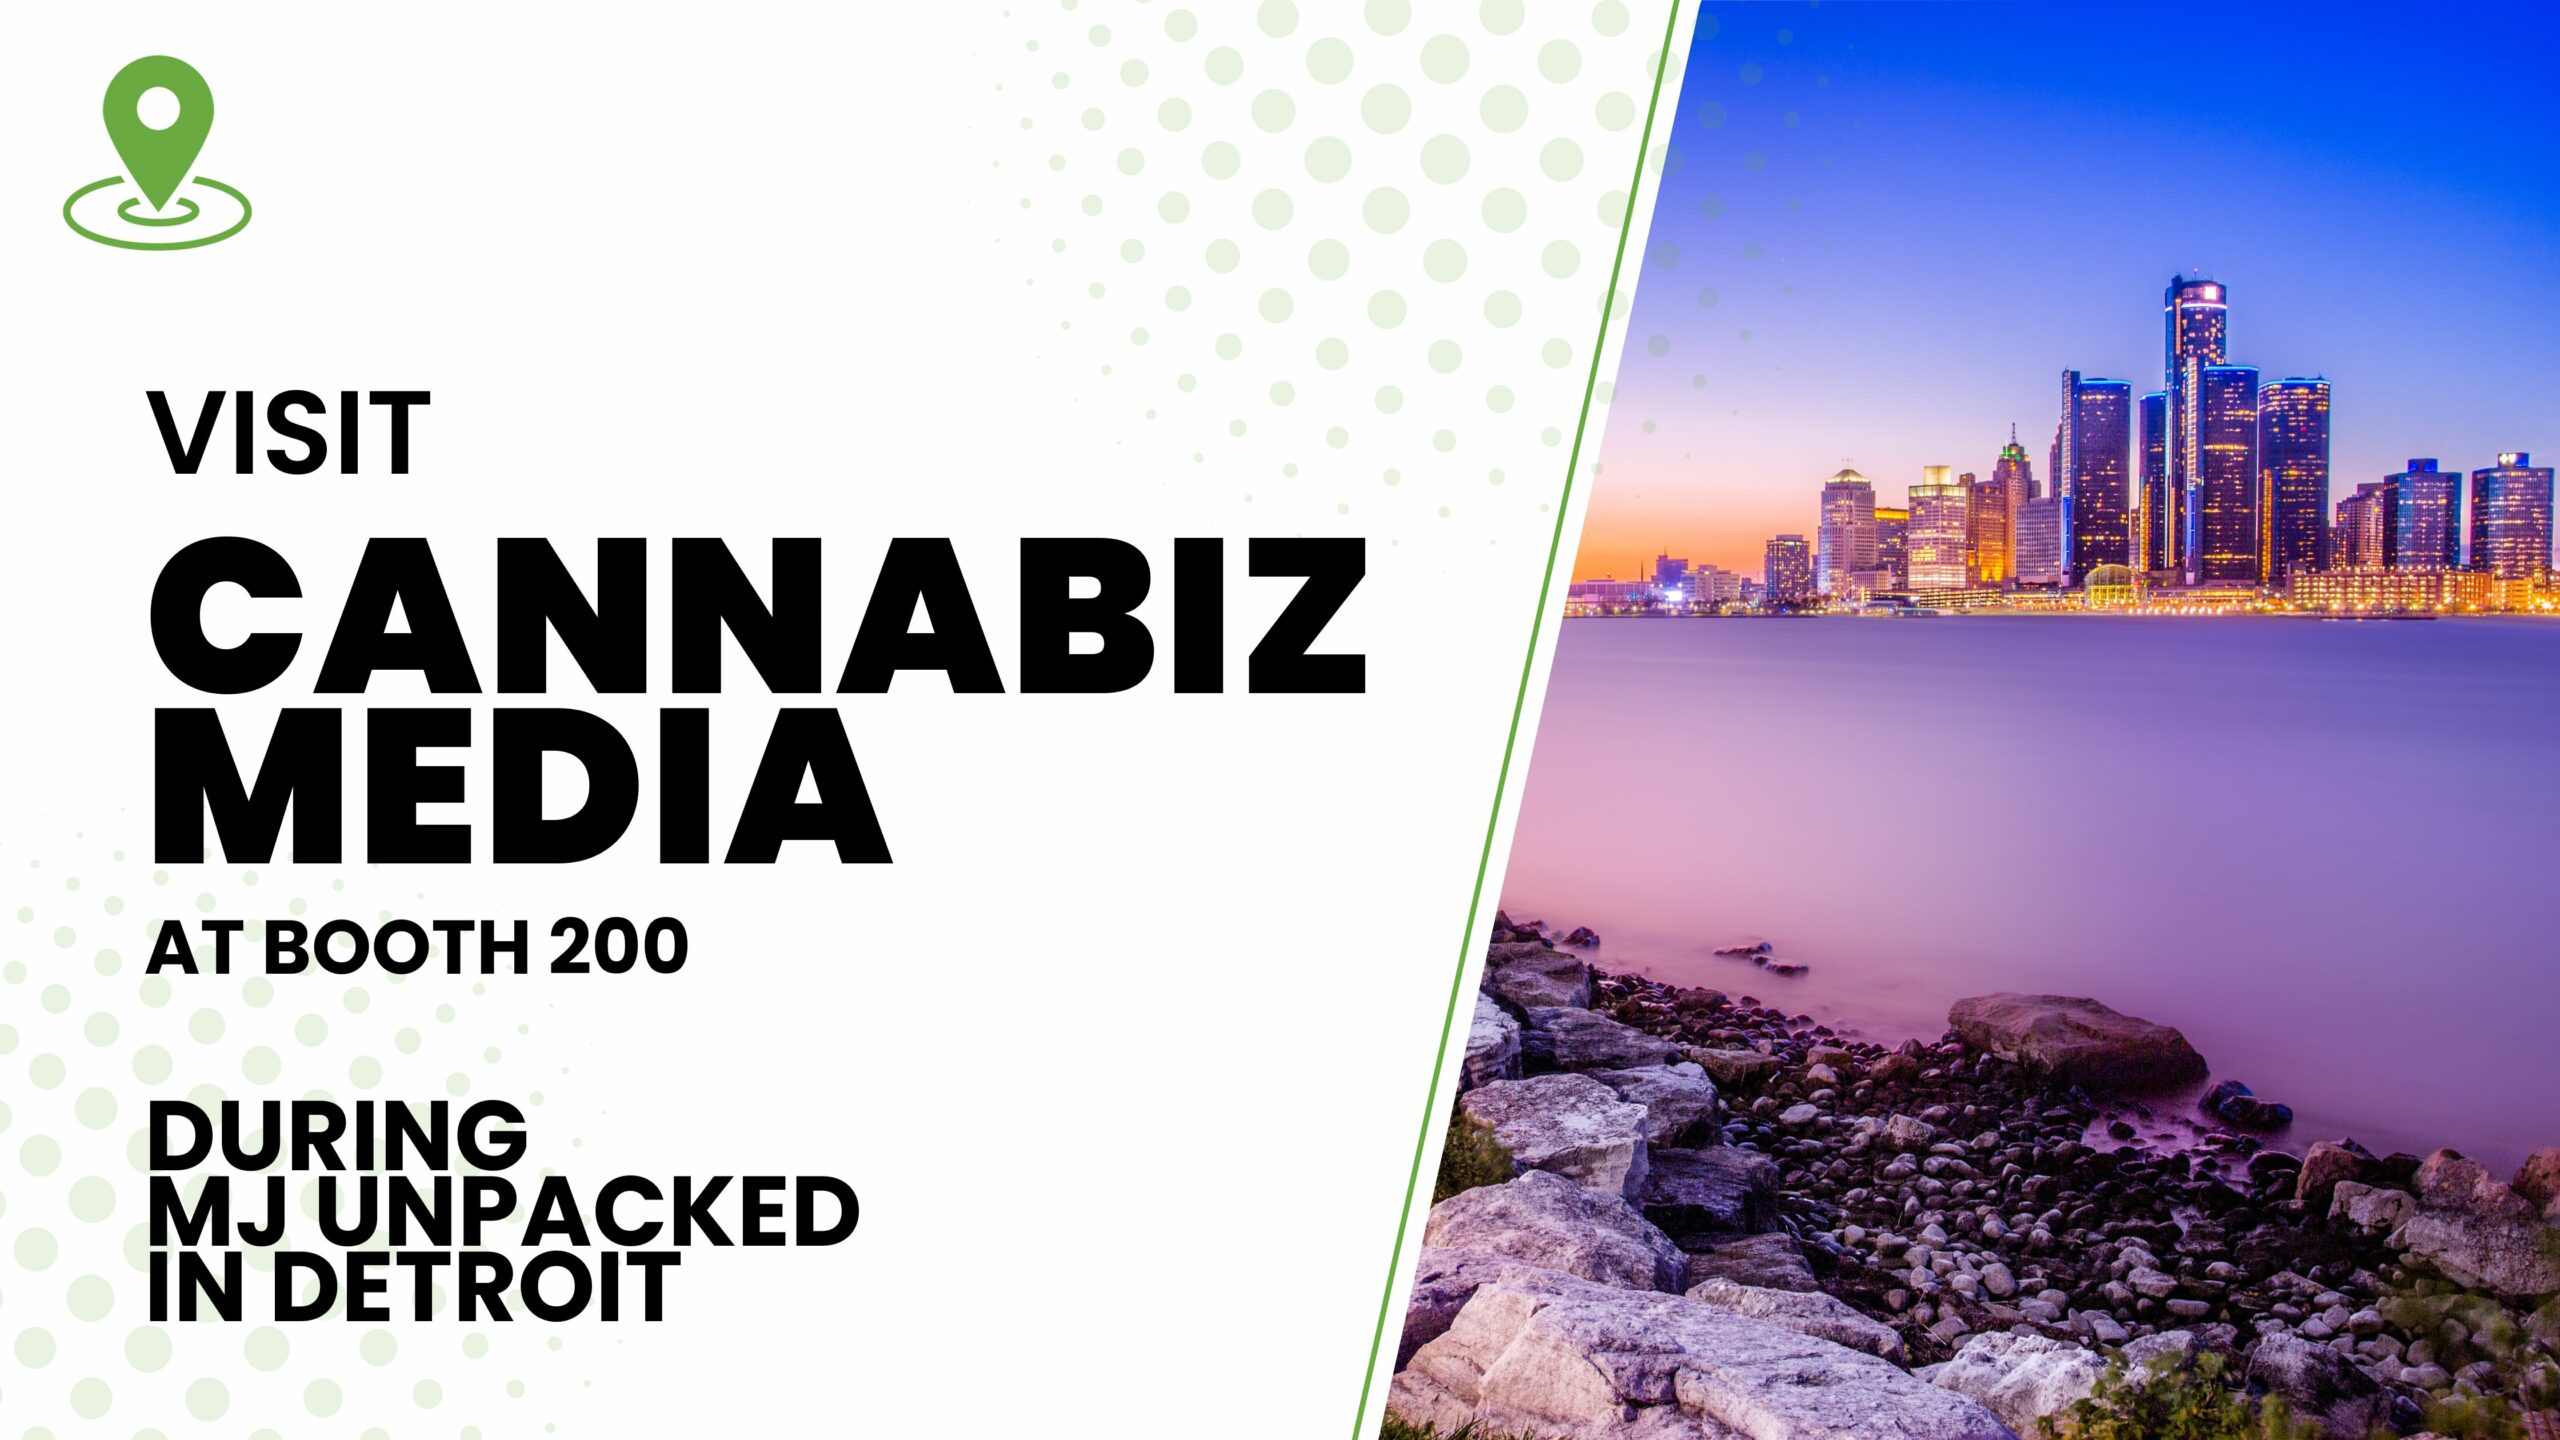 Visite Cannabiz Media en el stand n.° 200 durante MJ Unpacked en Detroit | Medios Cannábicos